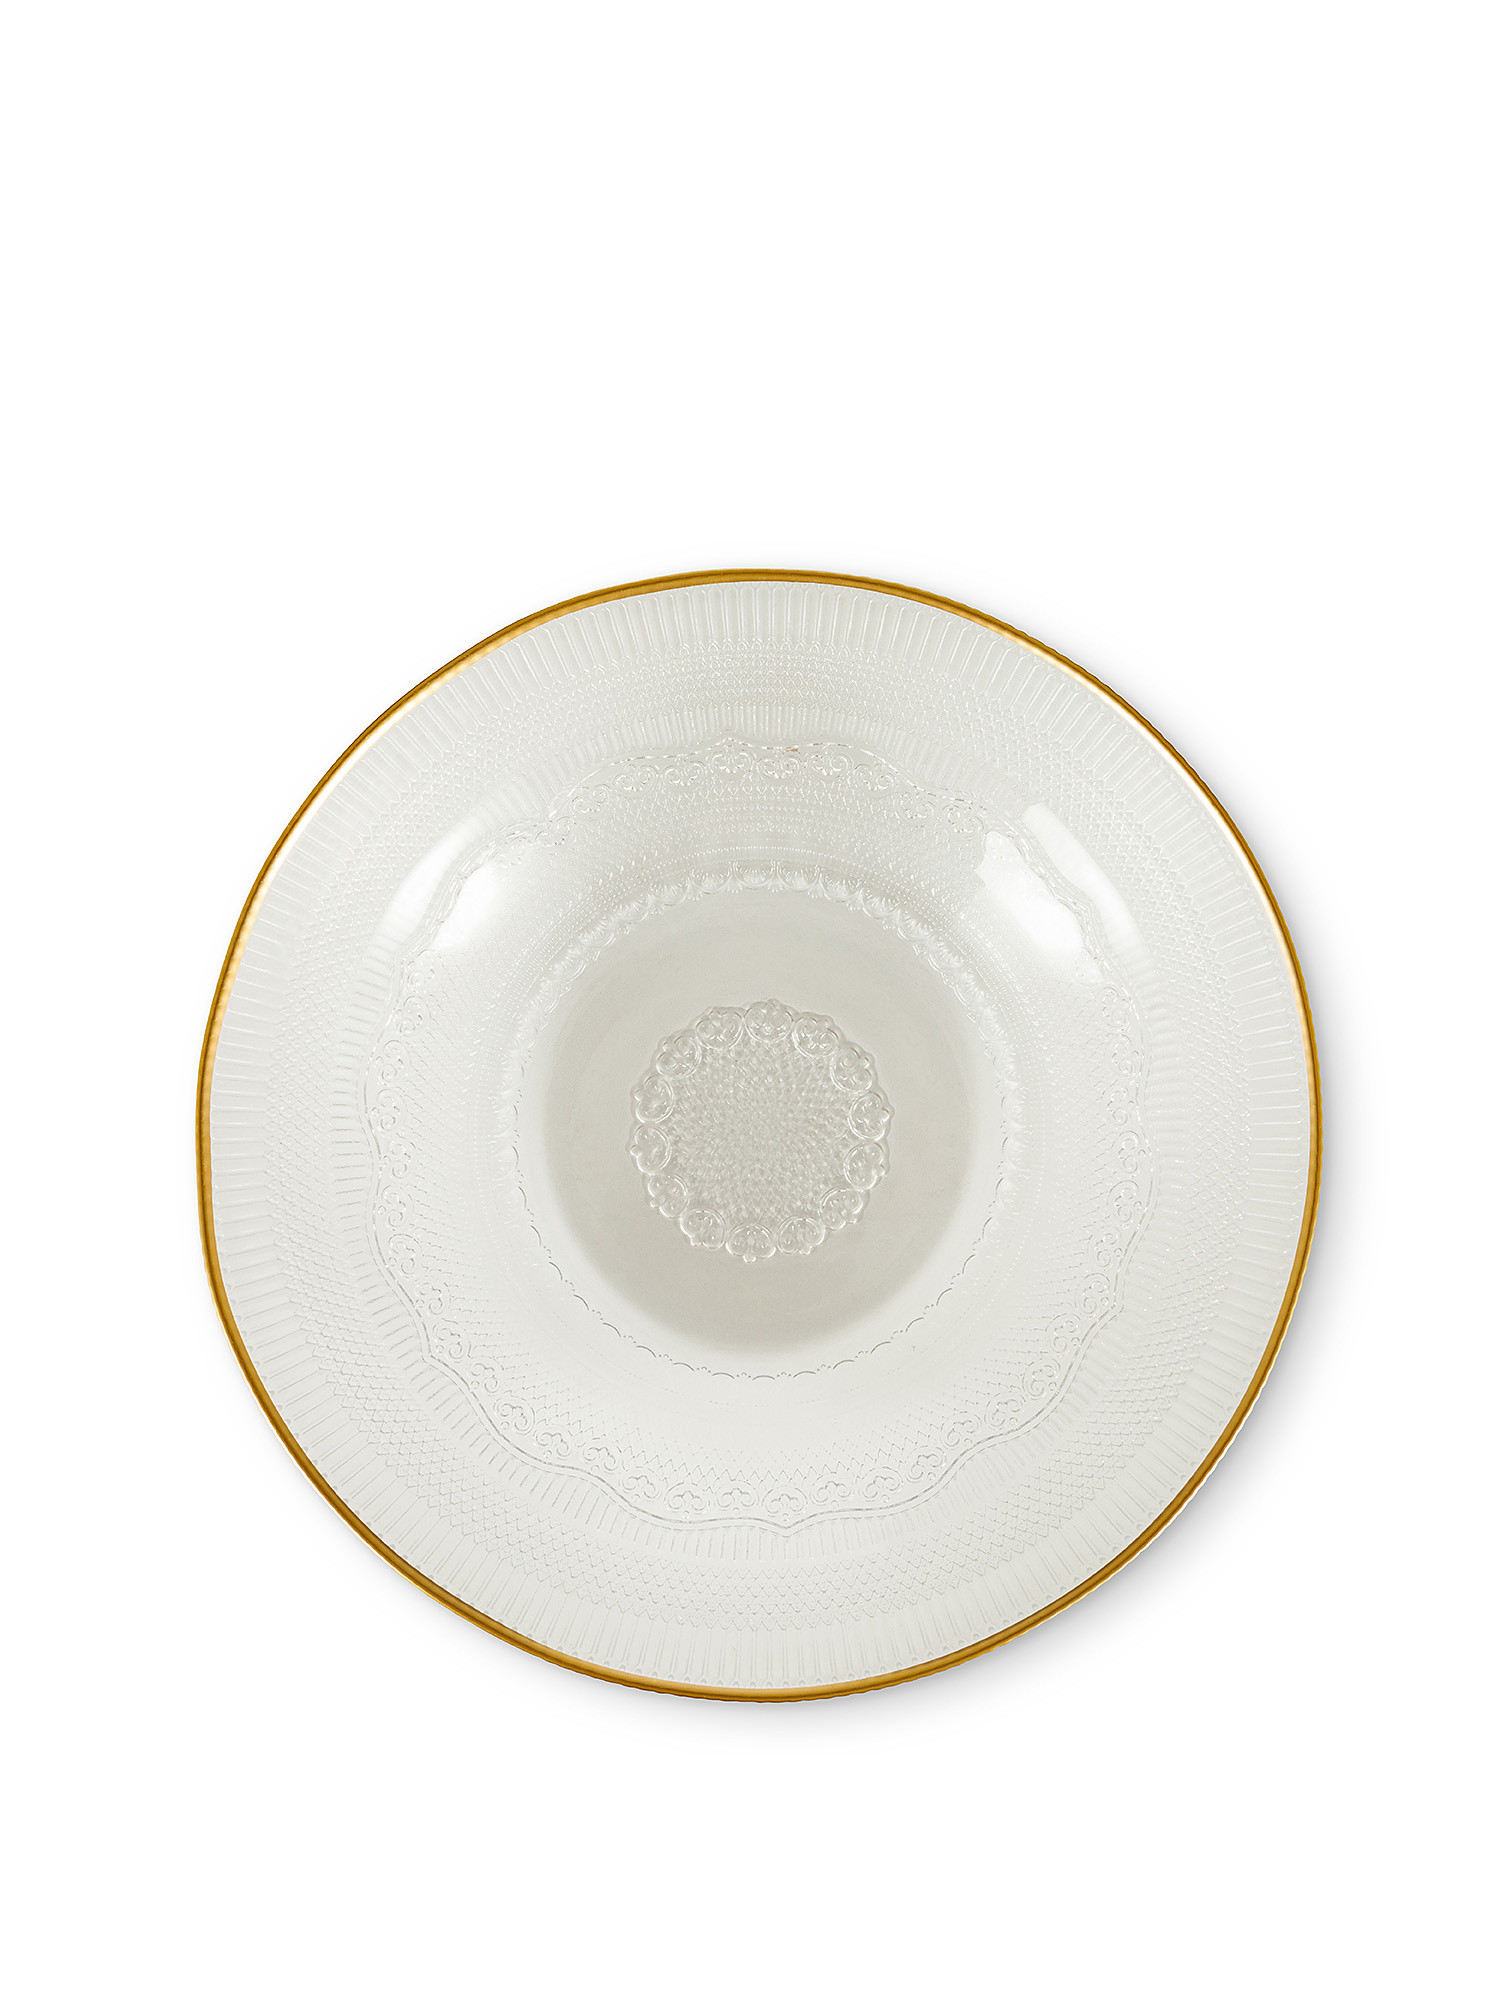 Gold edge glass salad bowl, Transparent, large image number 1